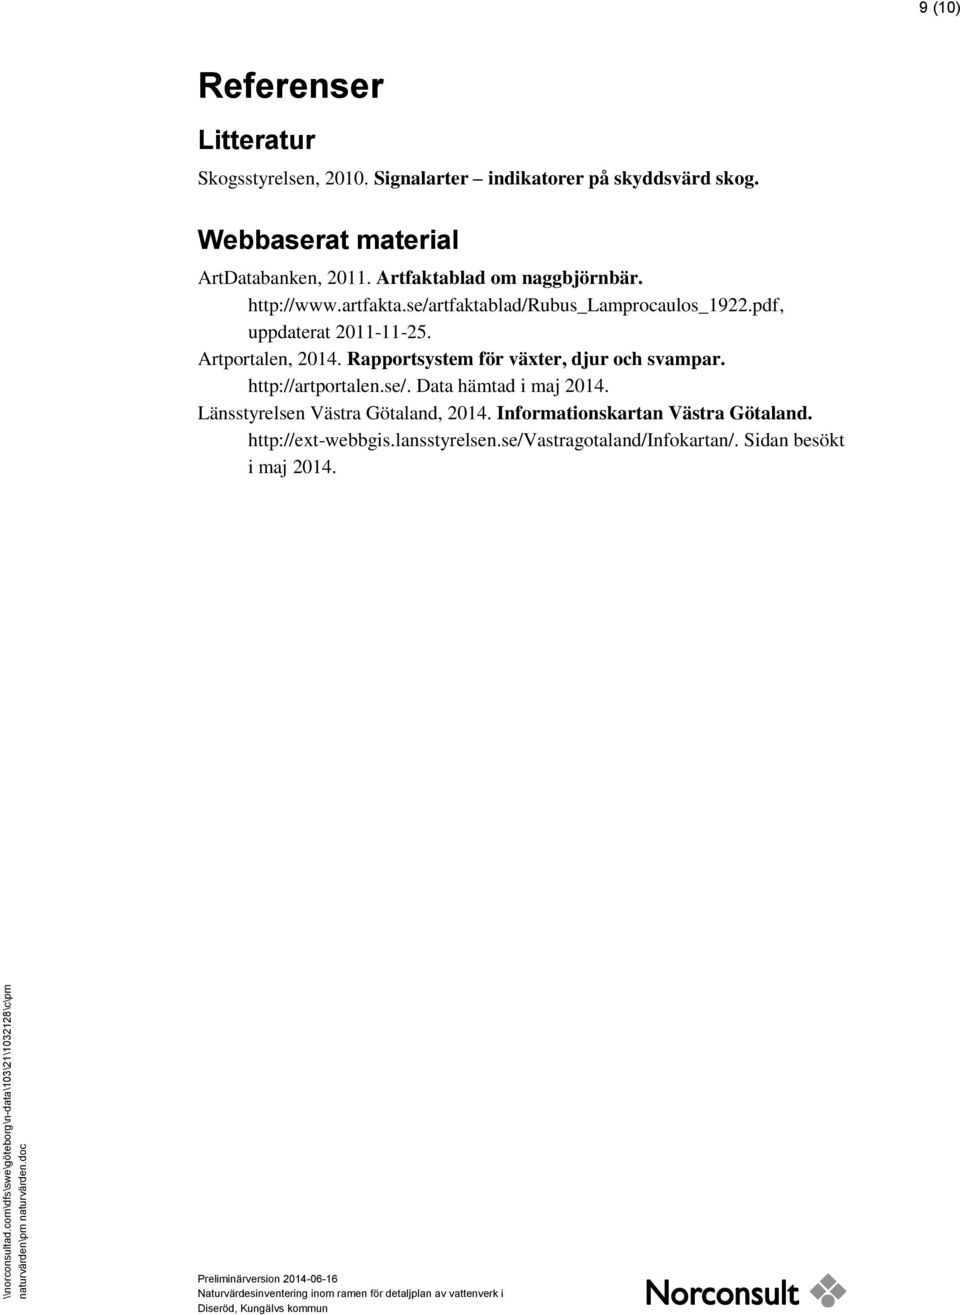 se/artfaktablad/rubus_lamprocaulos_1922.pdf, uppdaterat 2011-11-25. Artportalen, 2014. Rapportsystem för växter, djur och svampar. http://artportalen.se/. Data hämtad i maj 2014.